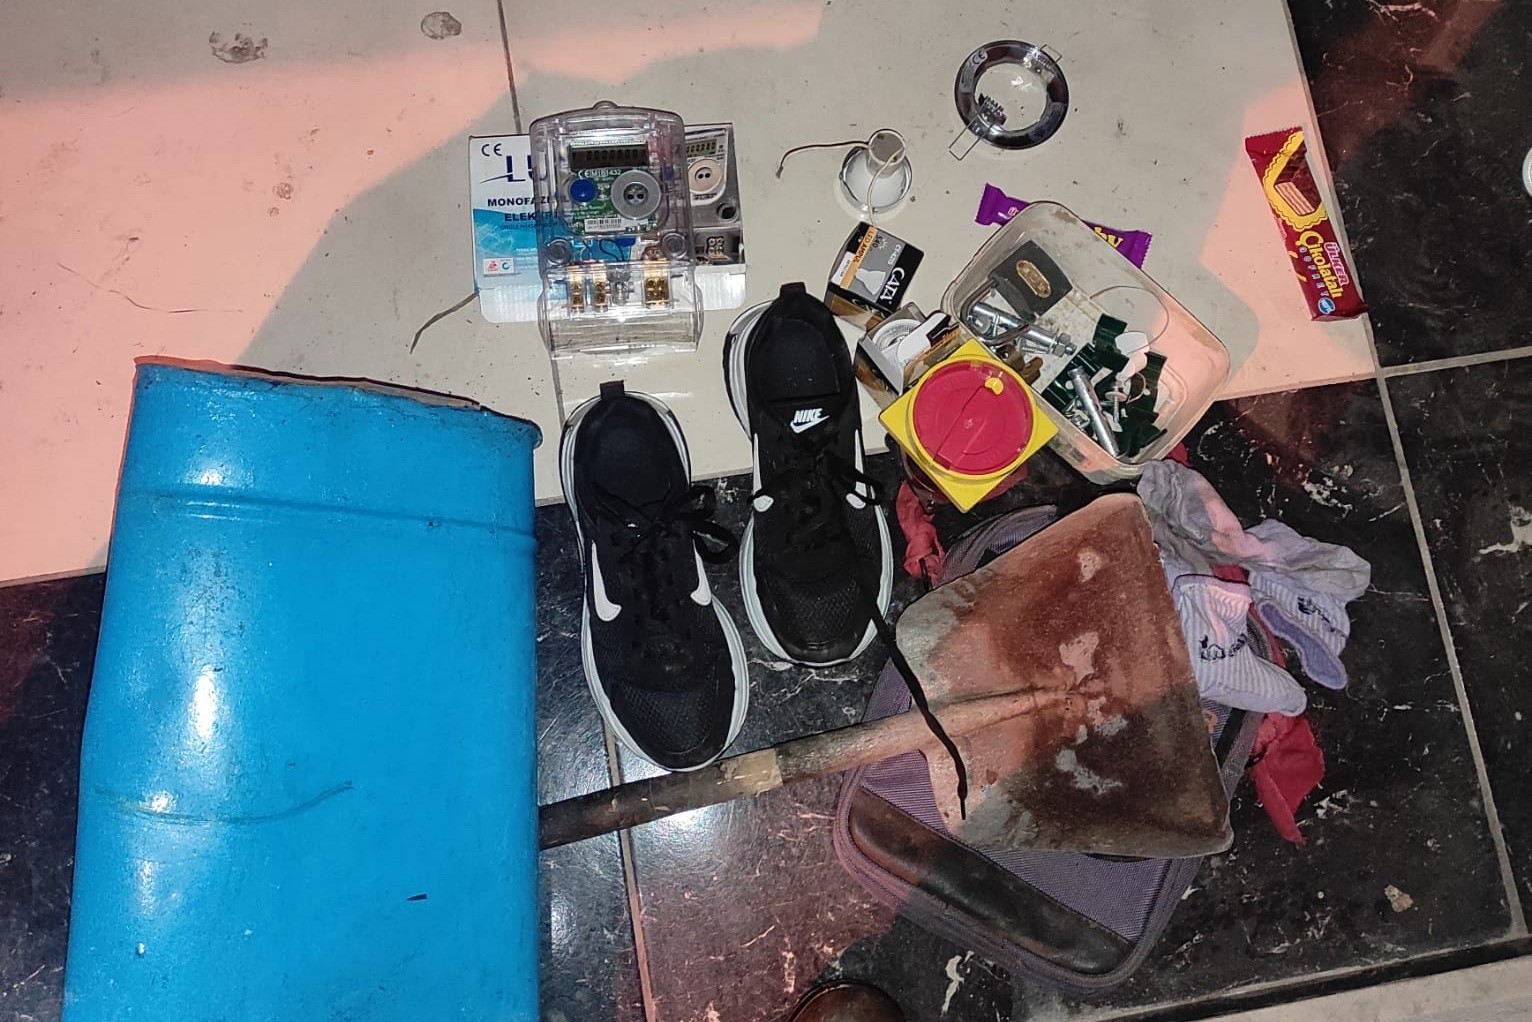 Binadan ayakkabı çaldı, 5 metre uzaklaşamadan gece kartallarına yakalandı #aydin